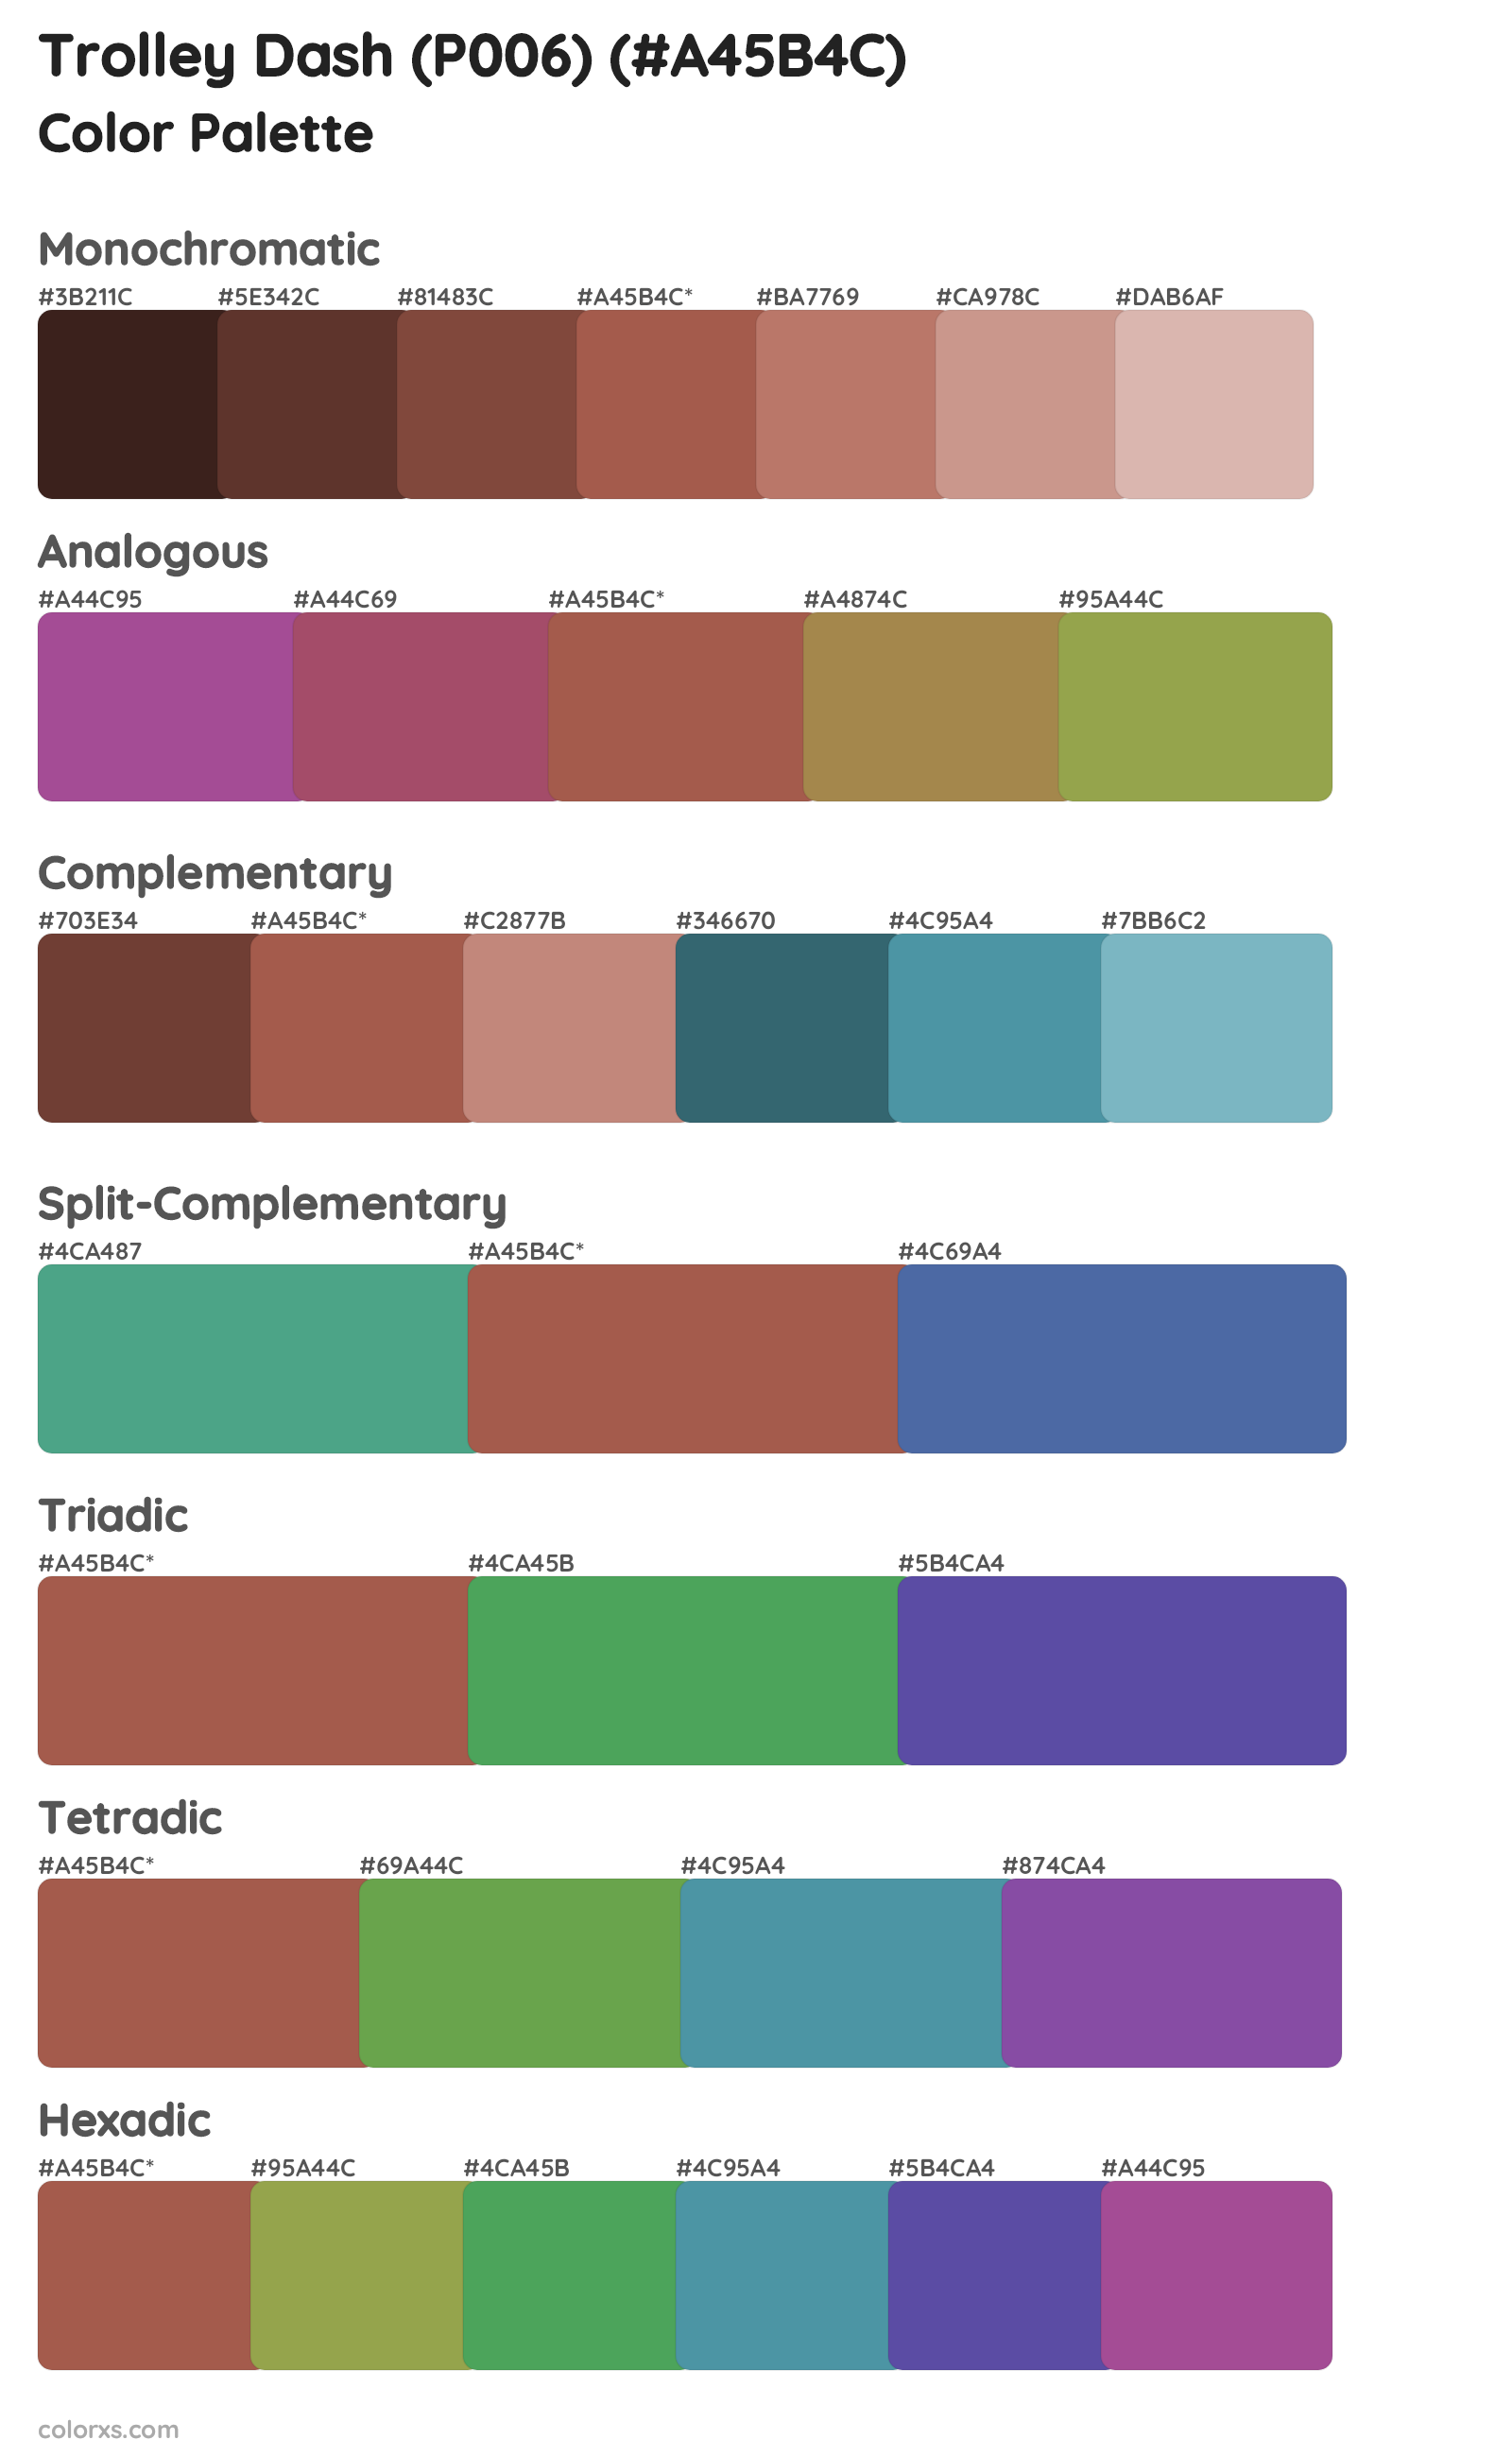 Trolley Dash (P006) Color Scheme Palettes